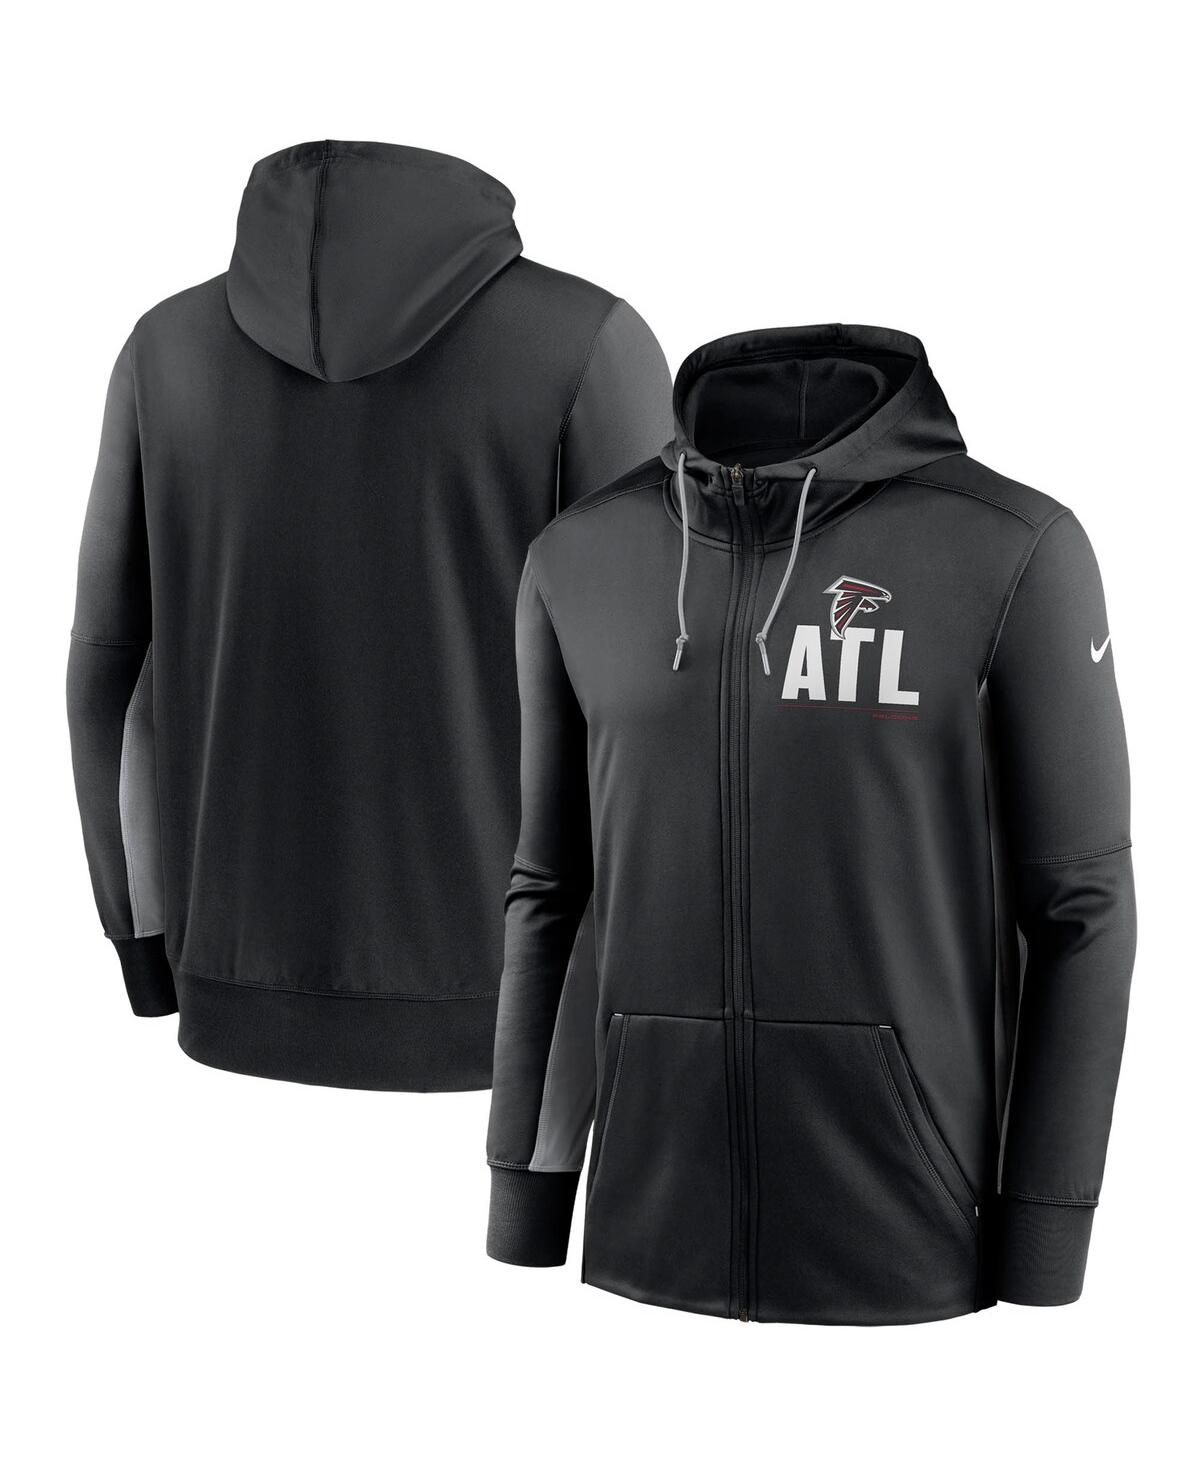 Men's Nike Black, Gray Atlanta Falcons Mascot Performance Full-Zip Hoodie